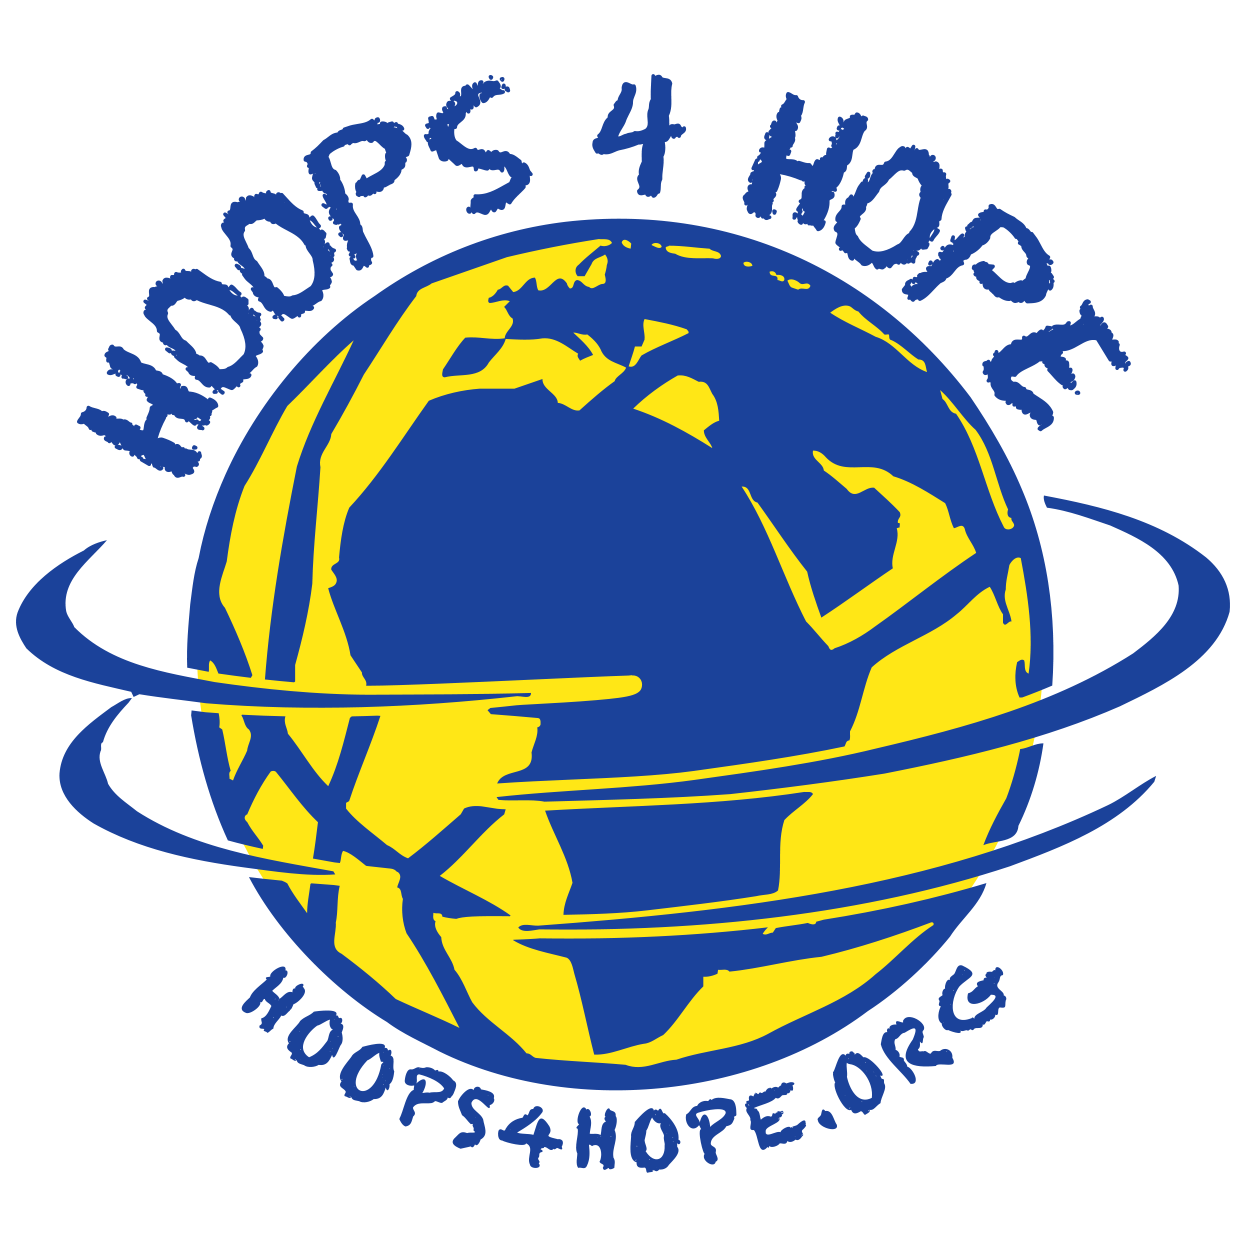 HOOPS 4 HOPE